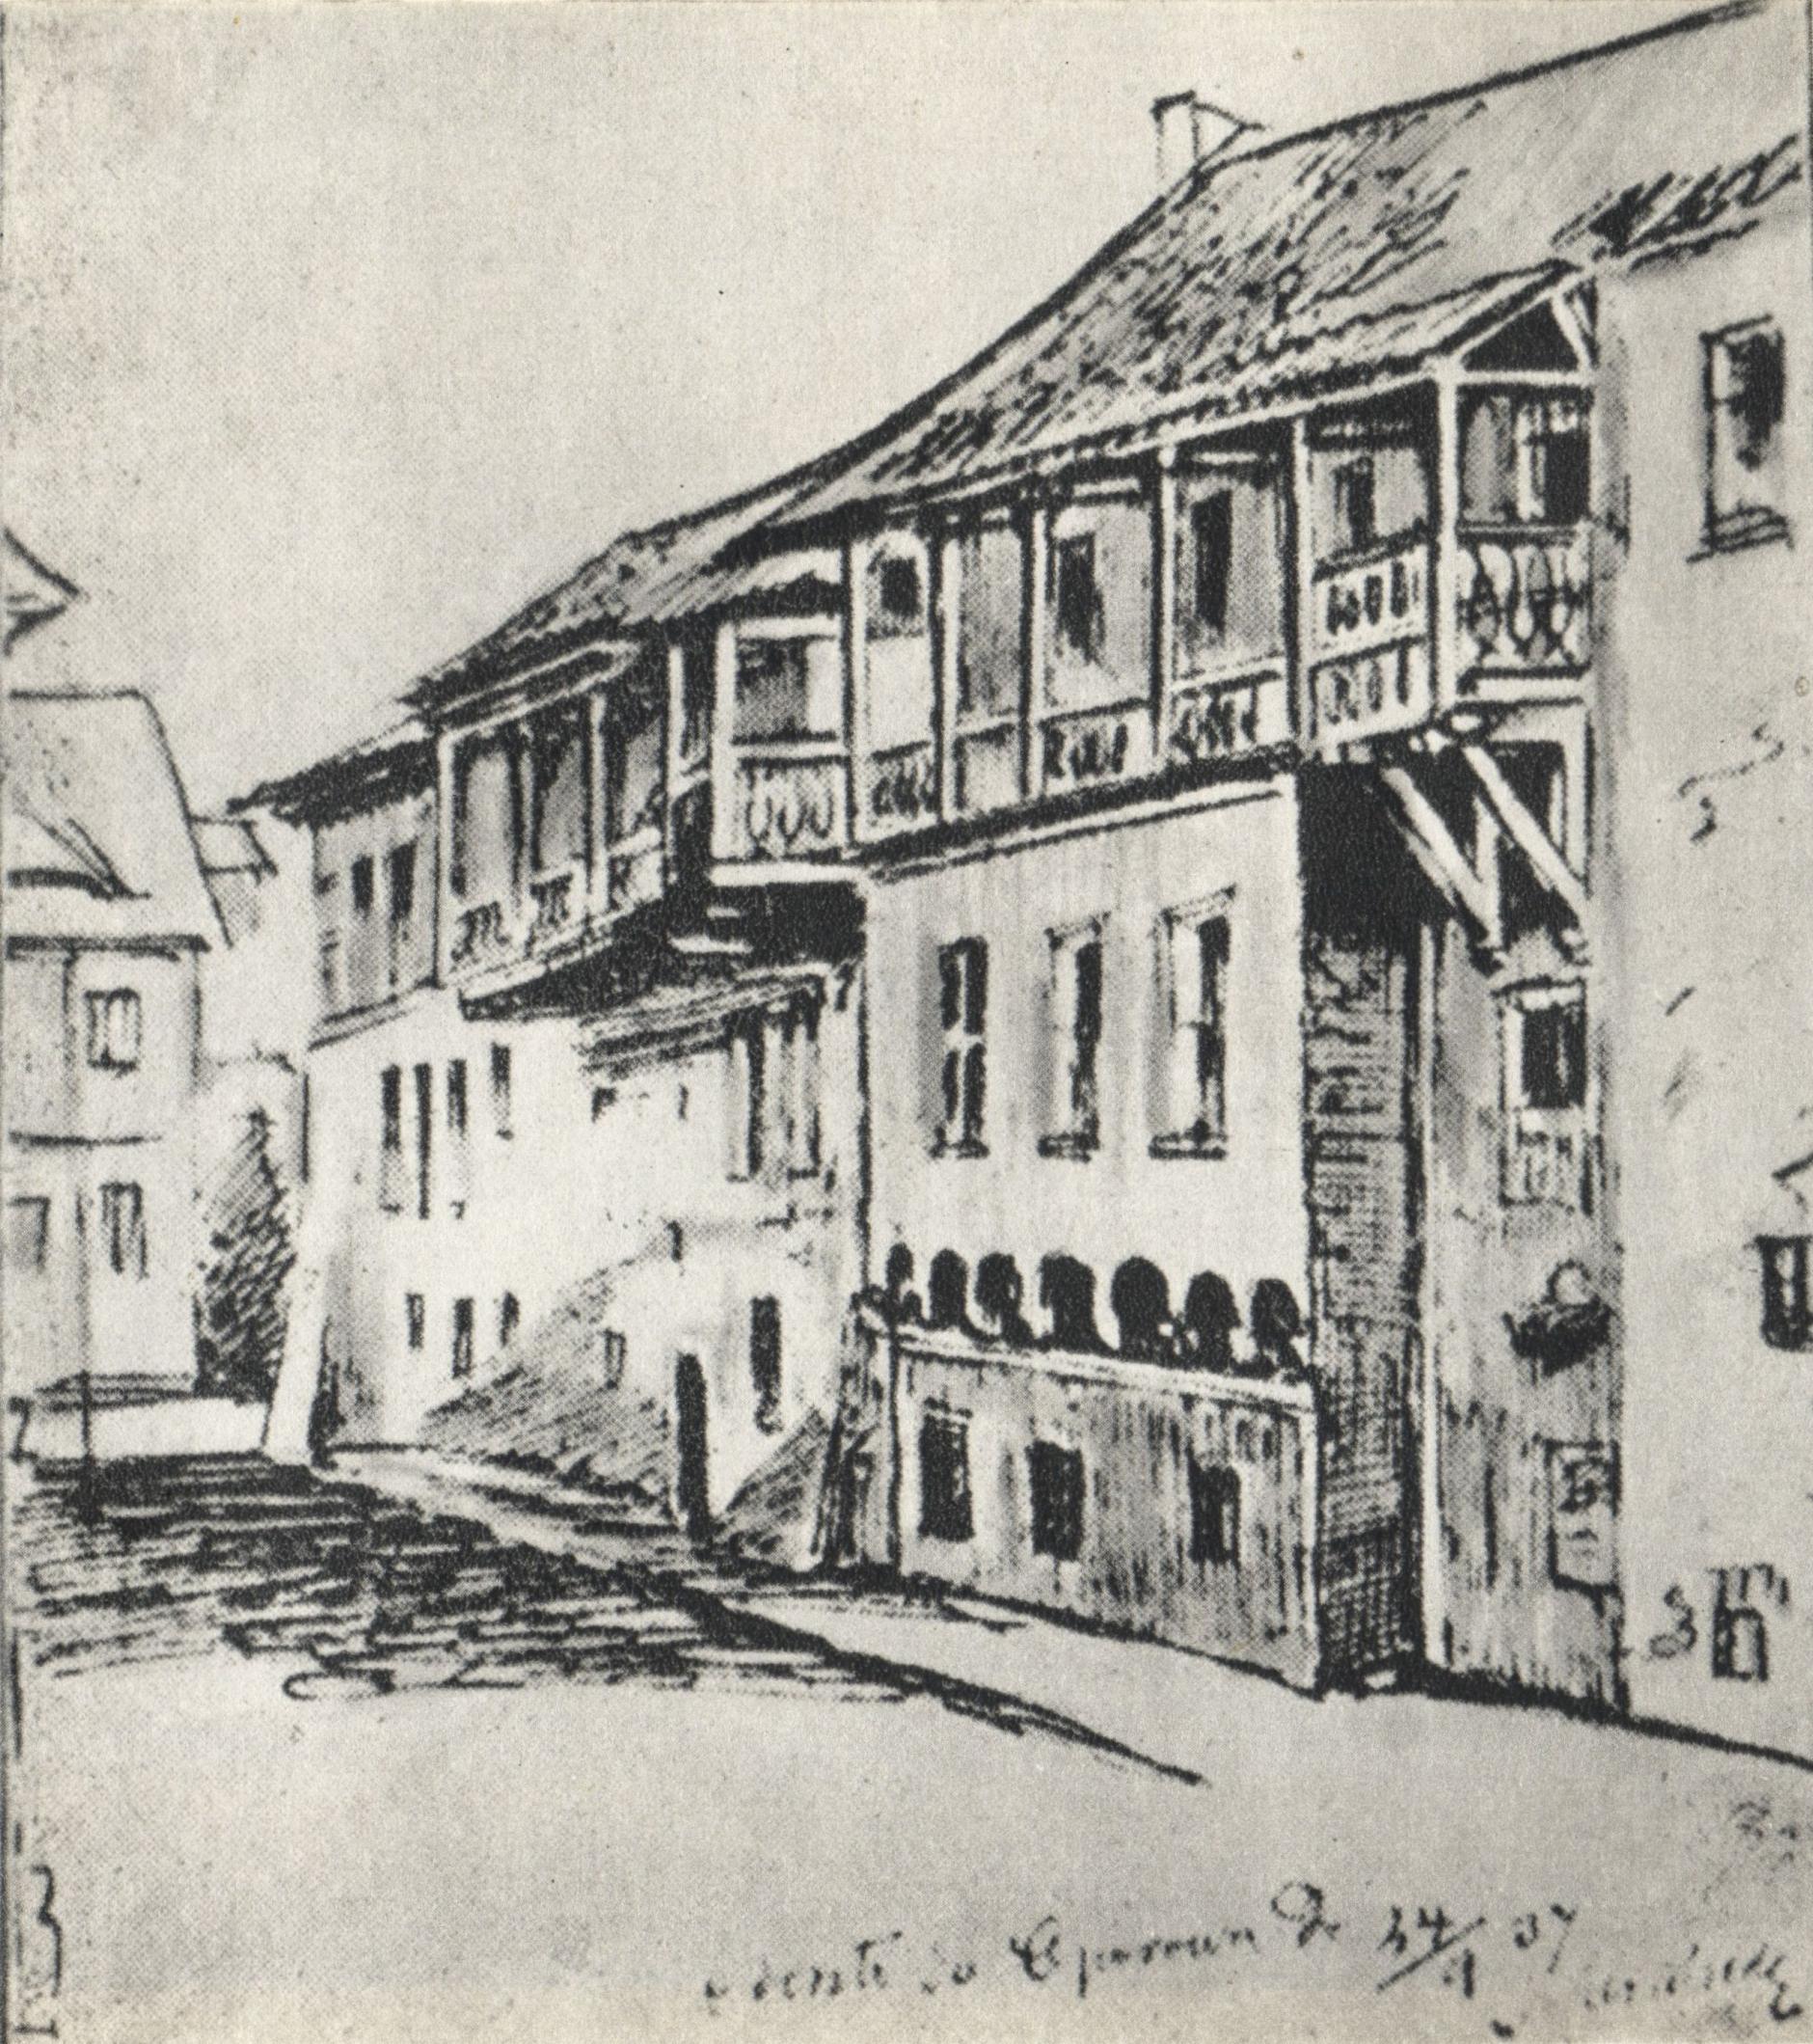 (1837) Kamienica nr. 69 przy Starym Rynku rozebrana dla przebicia ul. Nowej (Paderewskiego)